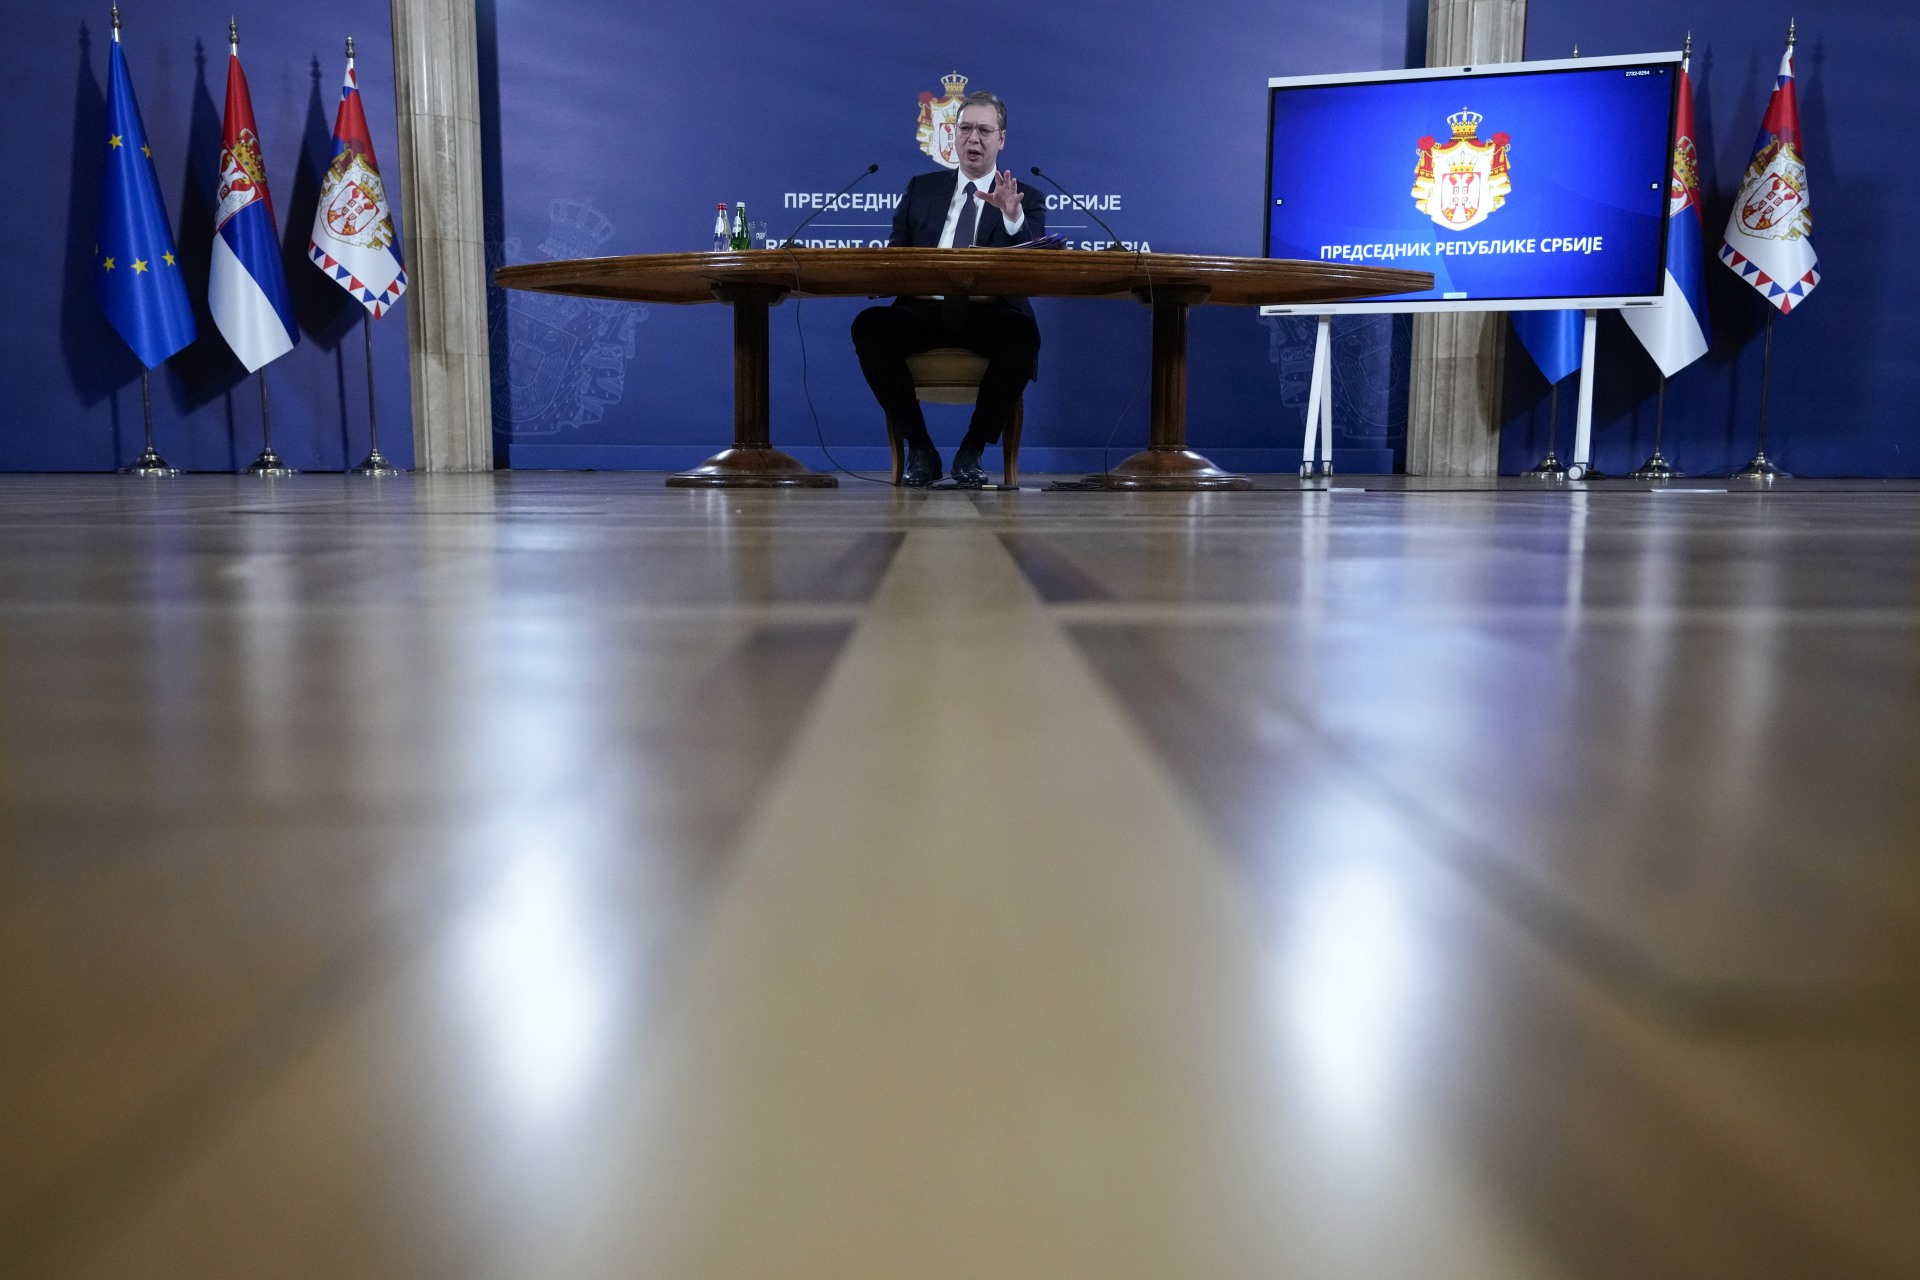 Председник Републике Србије Александар Вучић изјавио је да још нисмо добили нацрт онога што жели Европска унија, као и да је наша страна доставила свој предлог, а албанска свој.